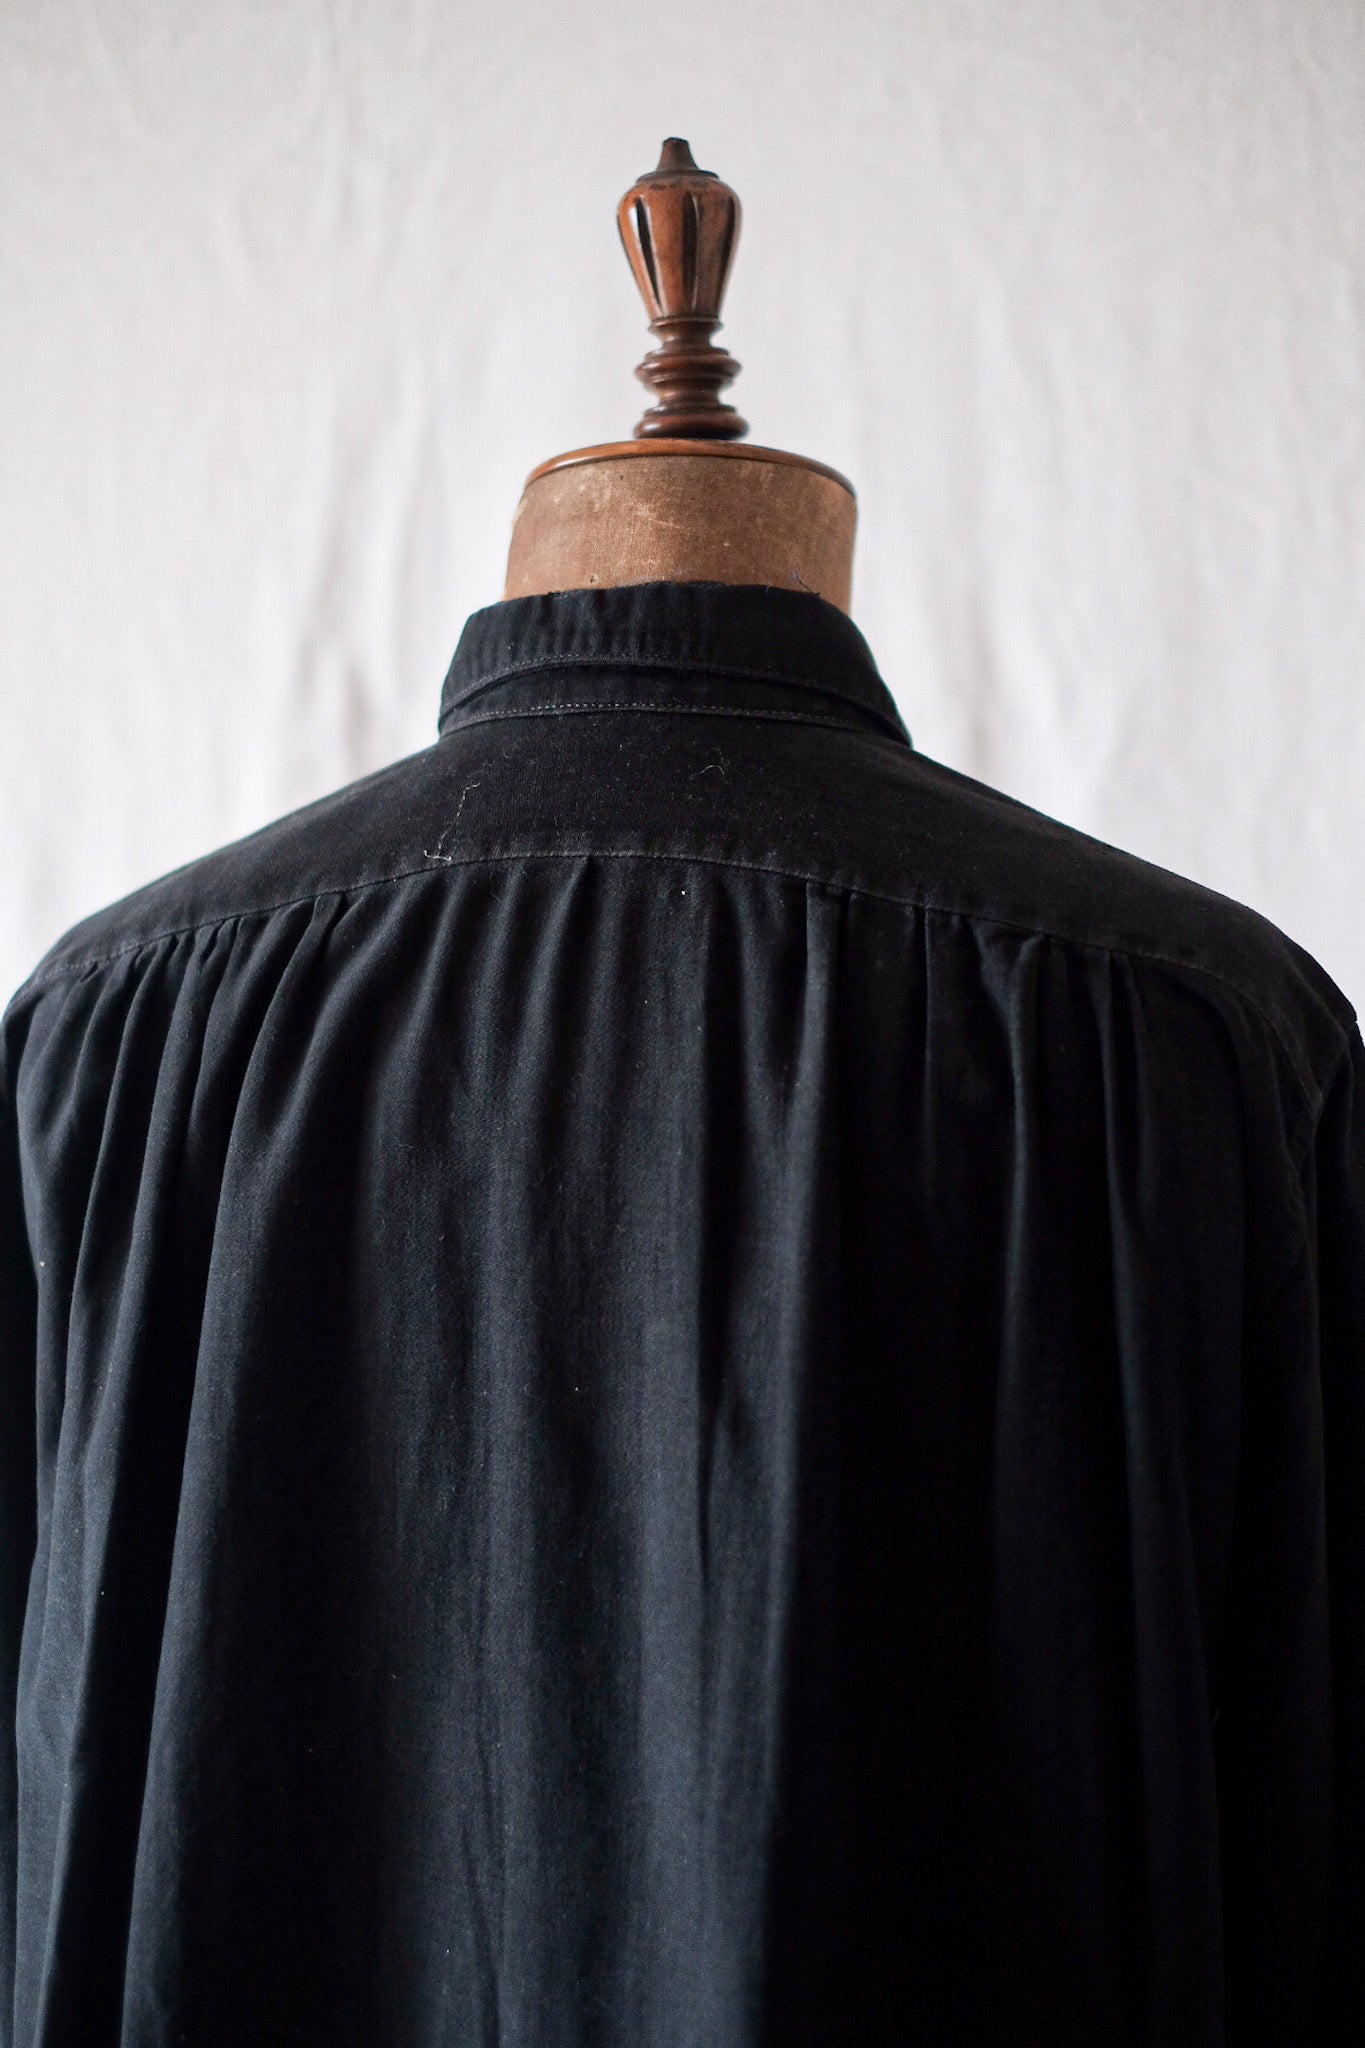 [~ 40 '] 프랑스 빈티지 블랙 몰스 피부 할아버지 셔츠